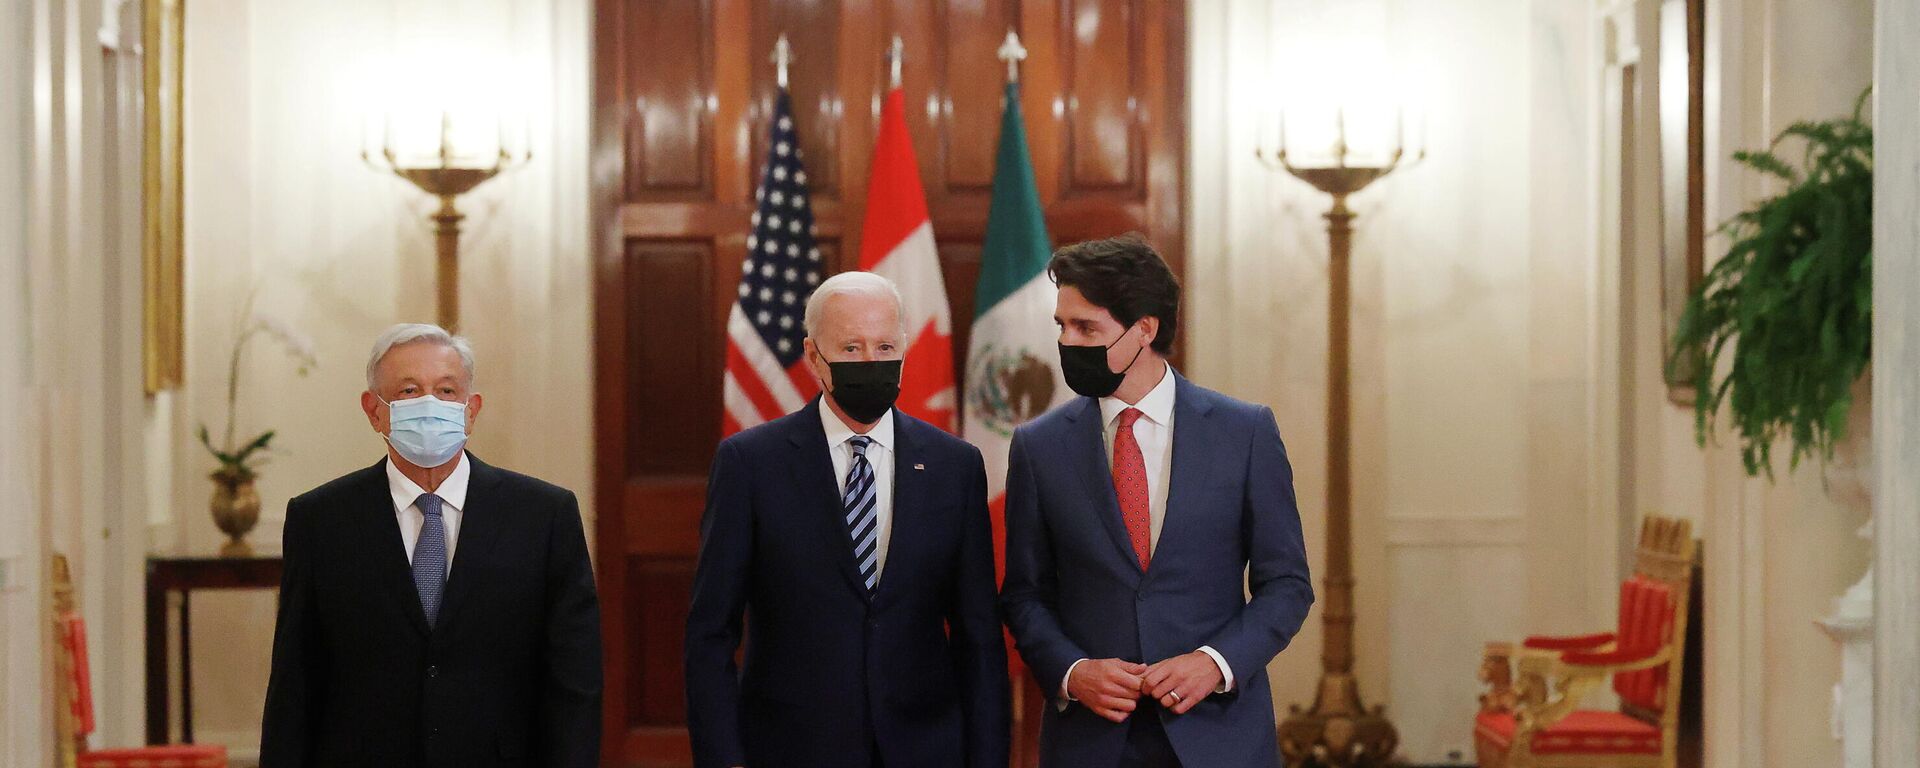 El presidente de México, Andrés Manuel López Obrador, el presidente de EEUU, Joe Biden, y el primir ministro de Canadá, Justin Trudeau - Sputnik Mundo, 1920, 19.11.2021